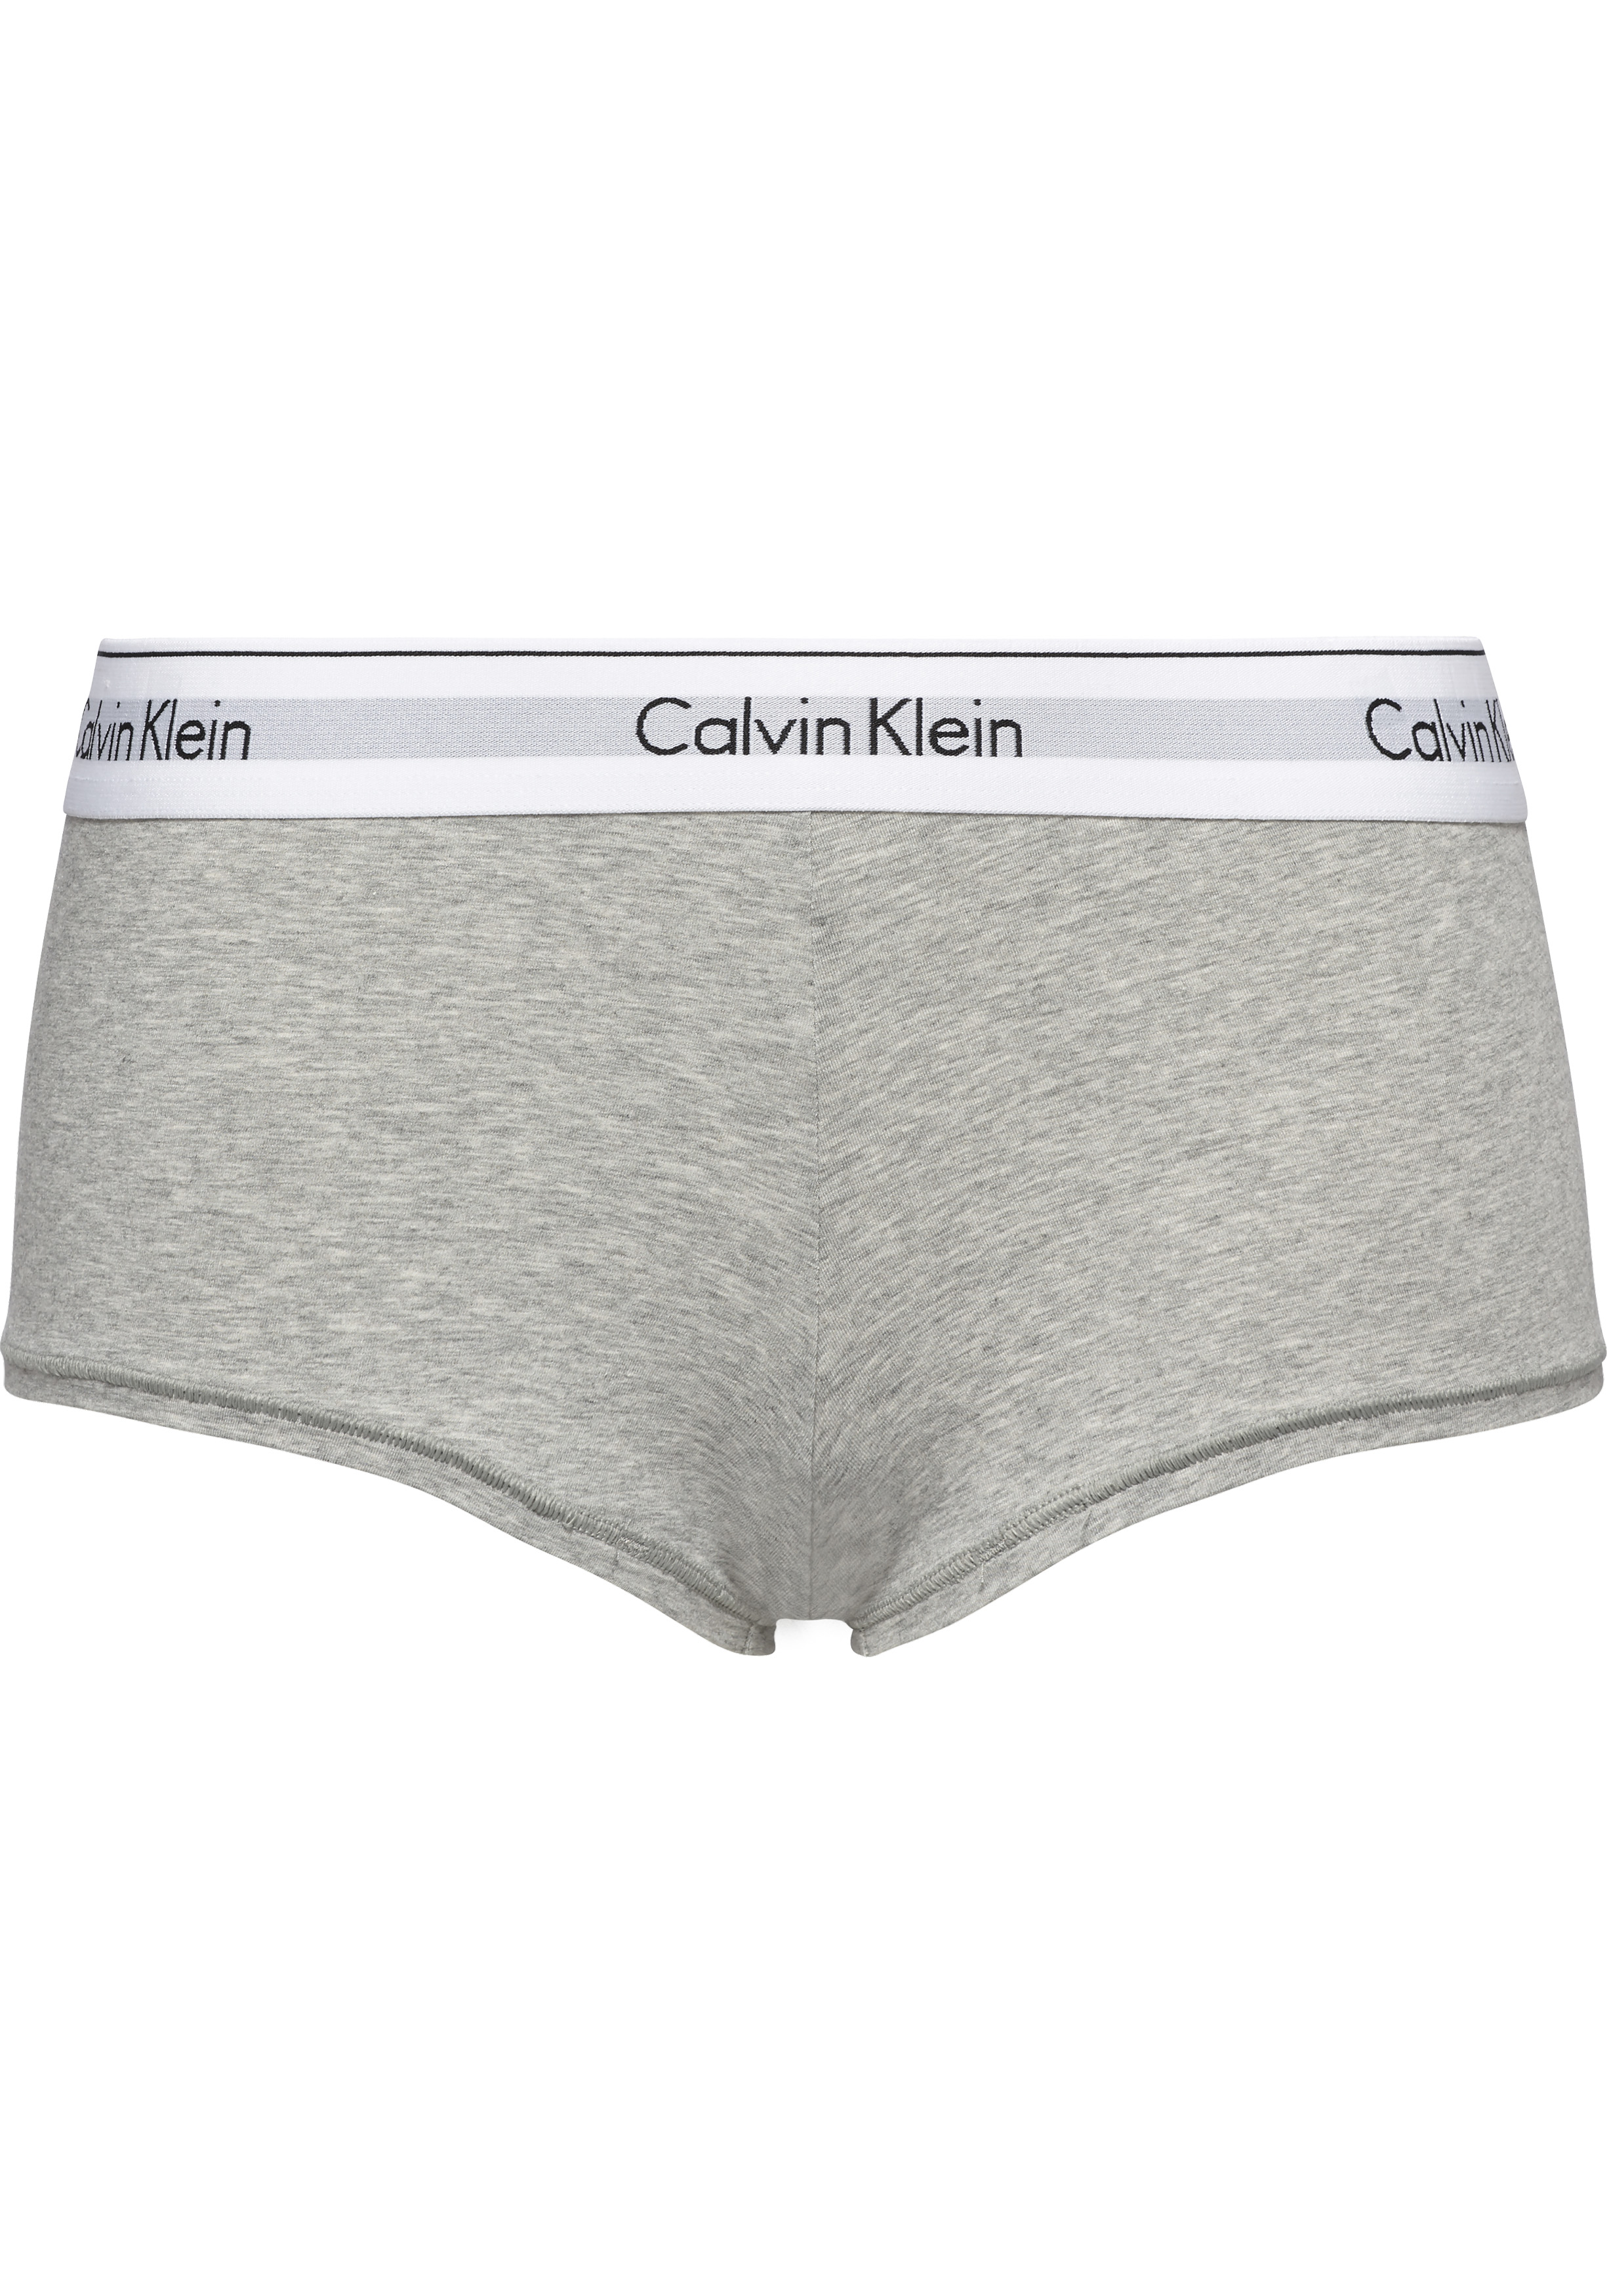 suiker Voorwaarden verpleegster Calvin Klein dames Modern Cotton hipster slip, boyshort, grijs - Shop de  nieuwste voorjaarsmode